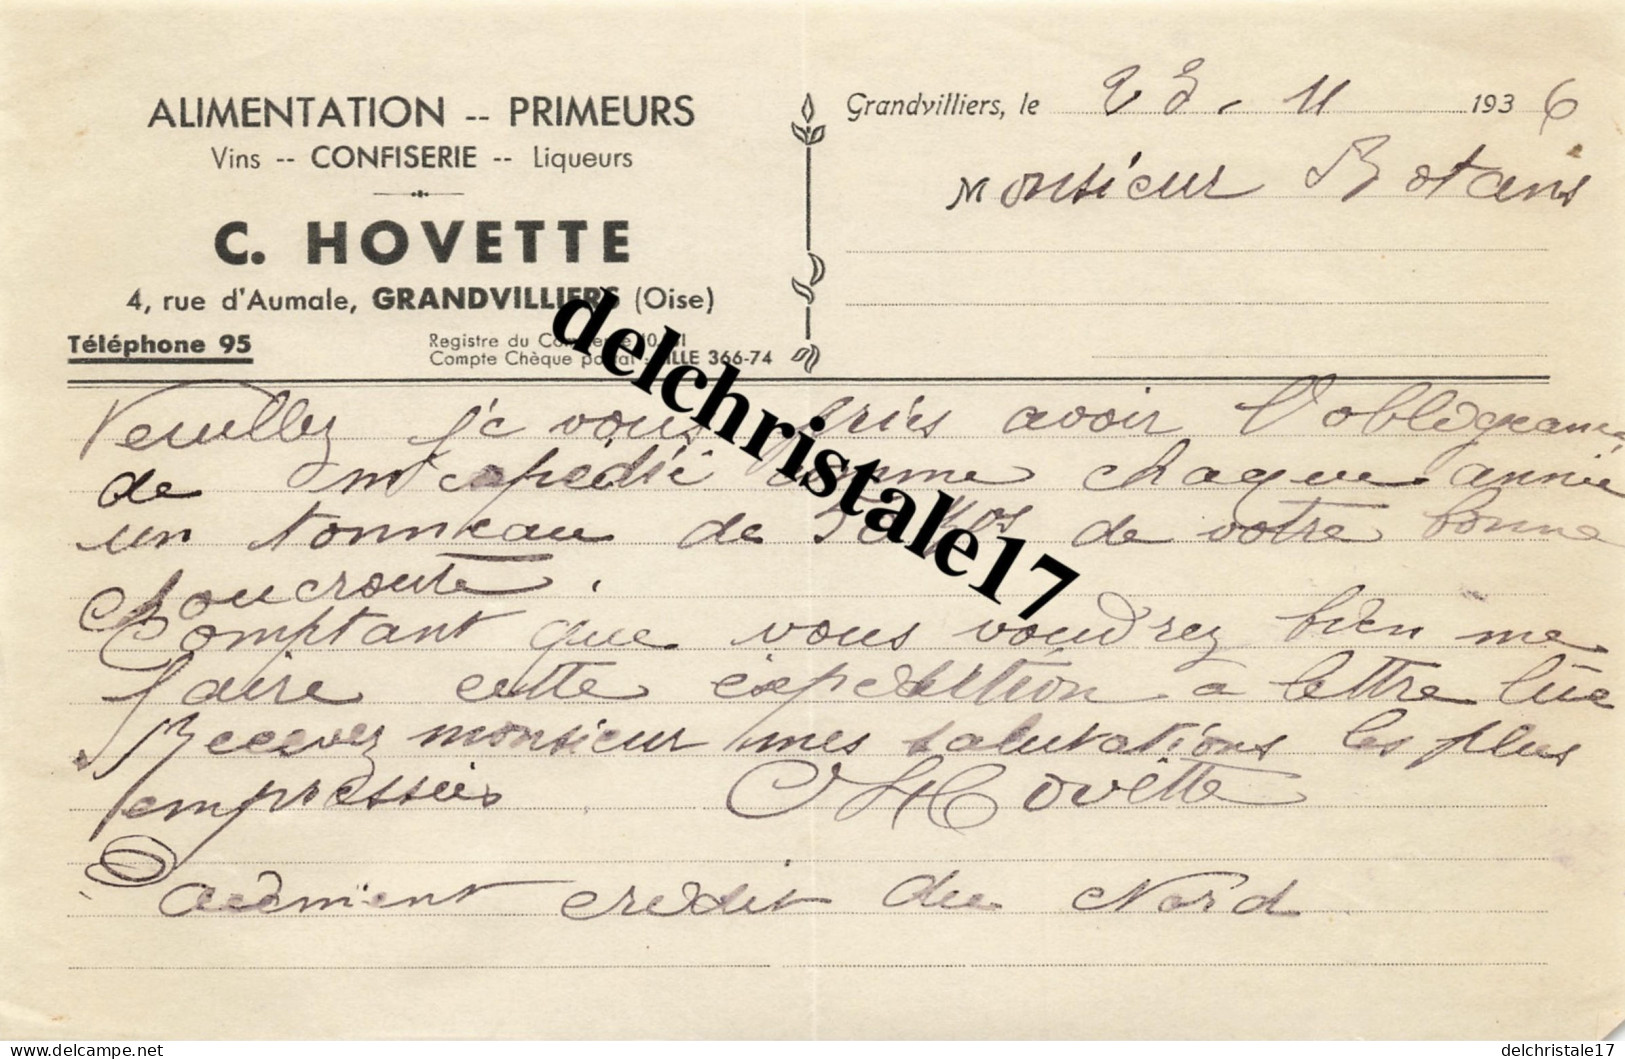 60 0008 GRANDVILLIERS OISE 1933 Alimentation Primeurs Vins Confiserie Liqueurs C. HOVETTE Rue D'Aumale à M. BOTANS - Henderson